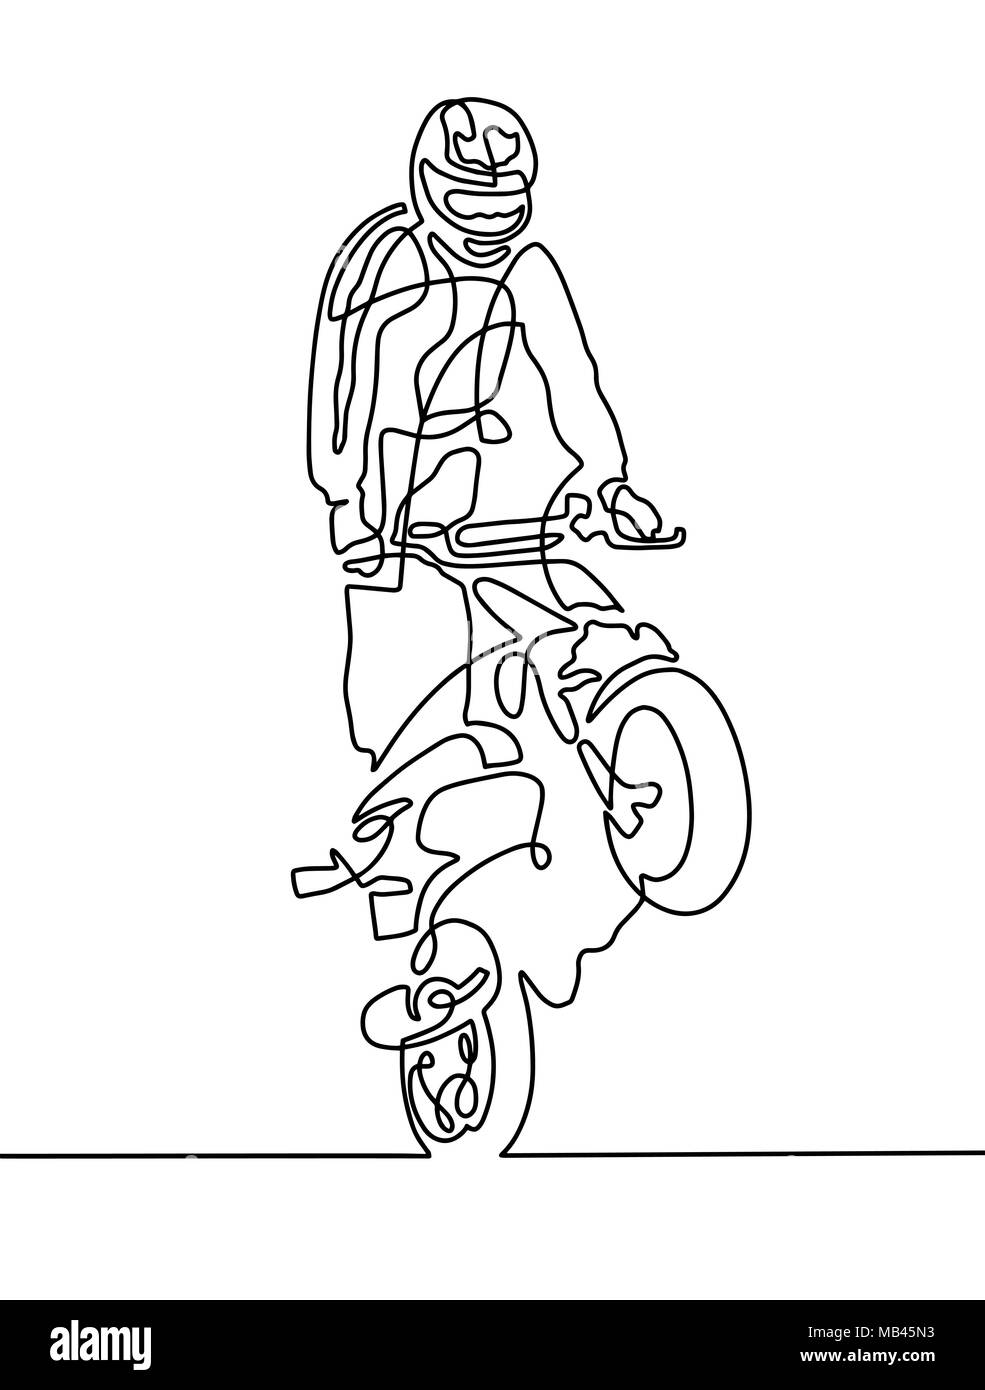 Une ligne continue d'un dessin sportif sur une moto Illustration de Vecteur